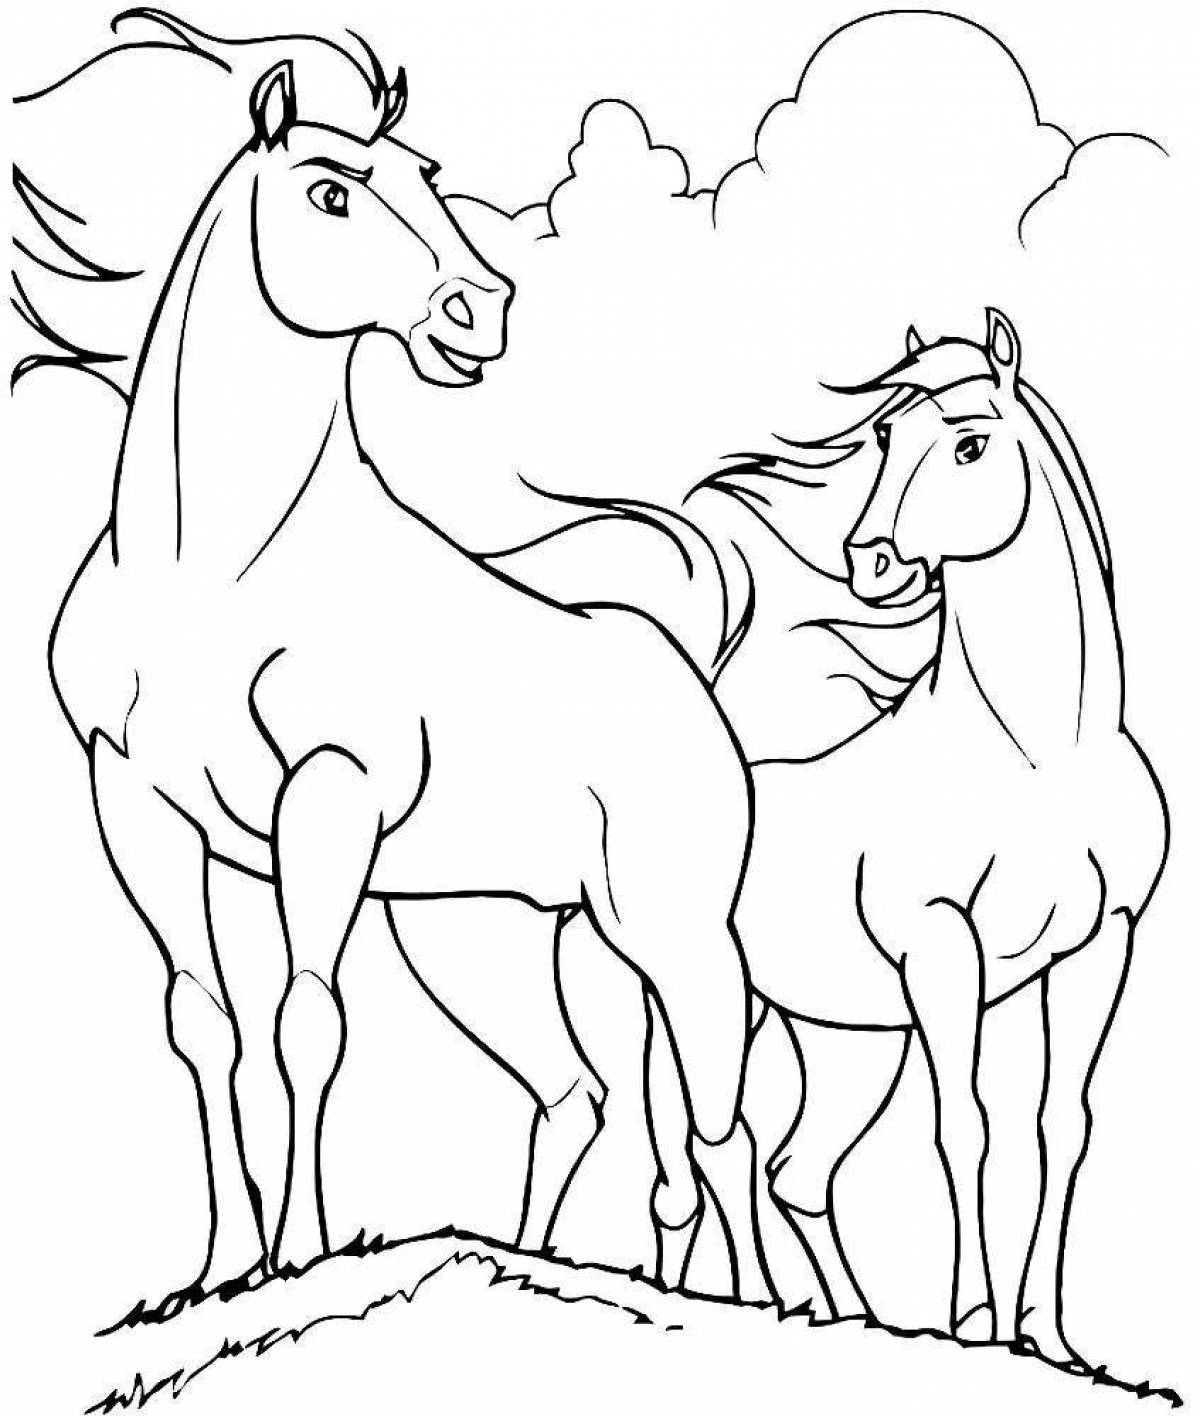 Elegant spirit horse coloring